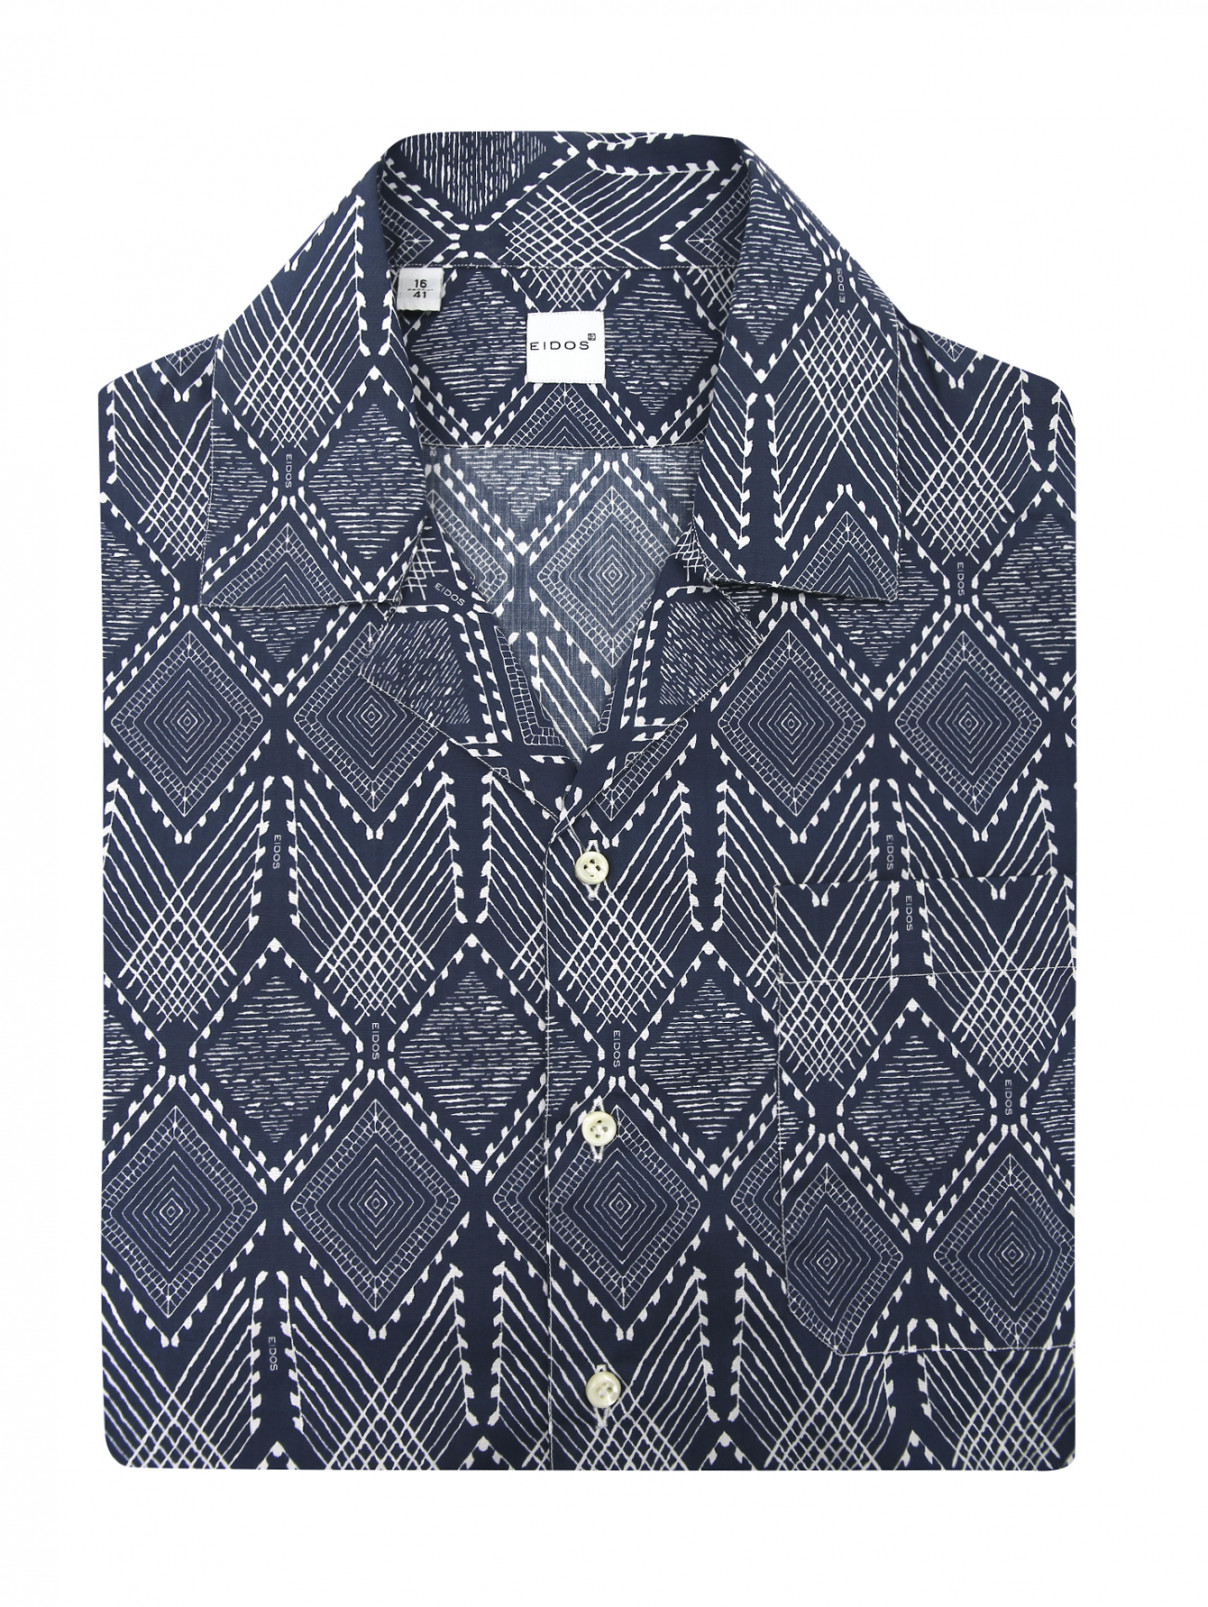 Рубашка из хлопка с узором Eidos  –  Общий вид  – Цвет:  Синий